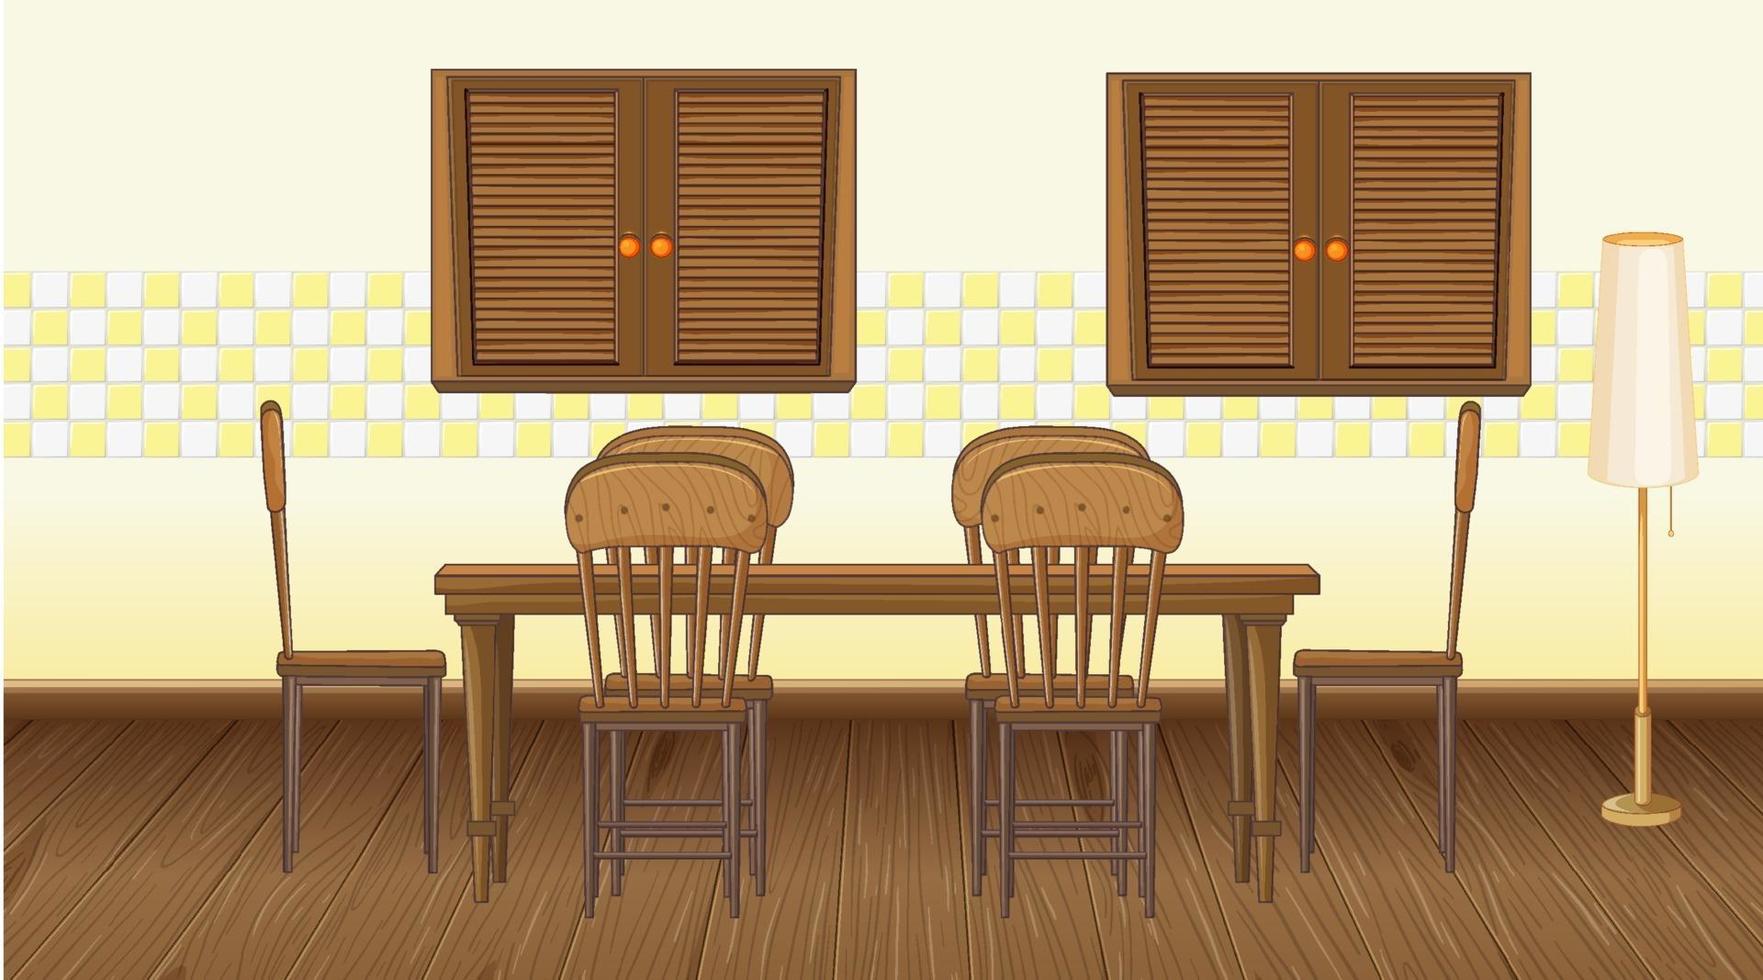 Diseño de interiores de comedor con muebles. vector